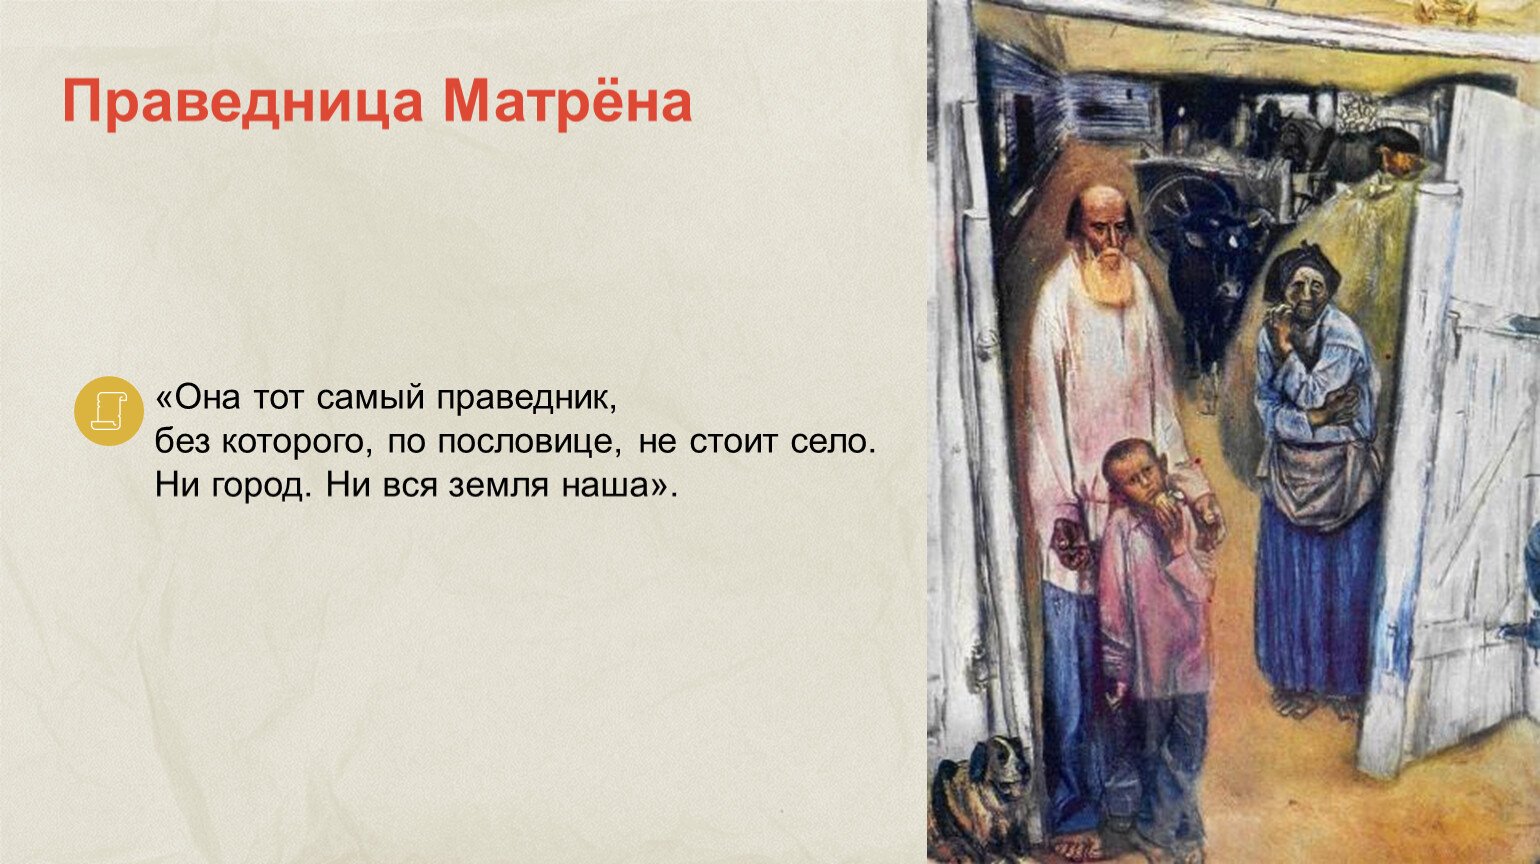 Почему солженицын называет матрену праведницей